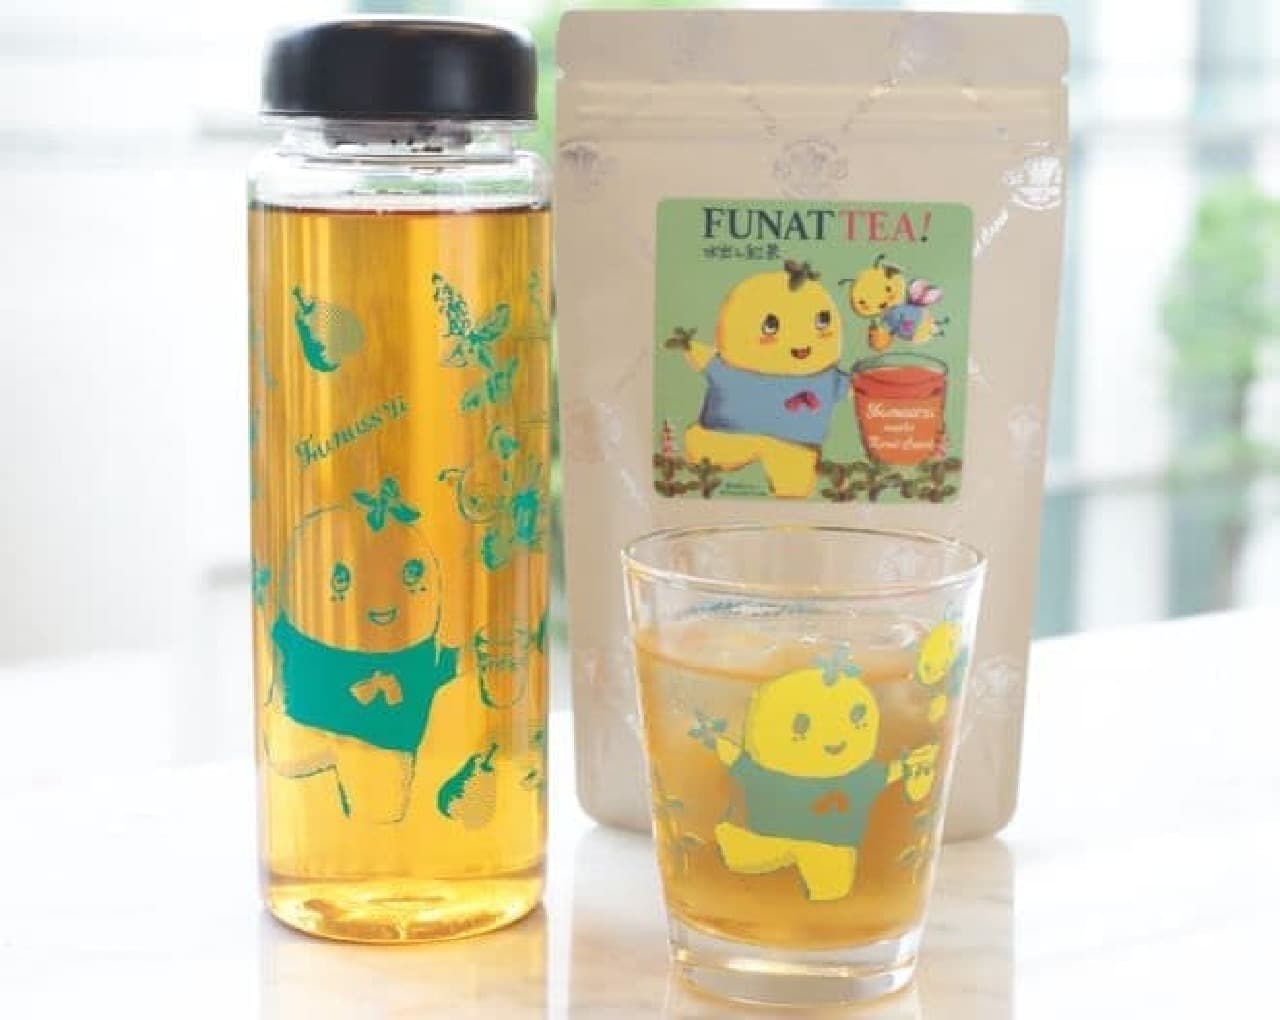 「FUNATTEA！ 水出し紅茶」は2016年に発売し好評だった「FUNATTEA!」の水出し紅茶